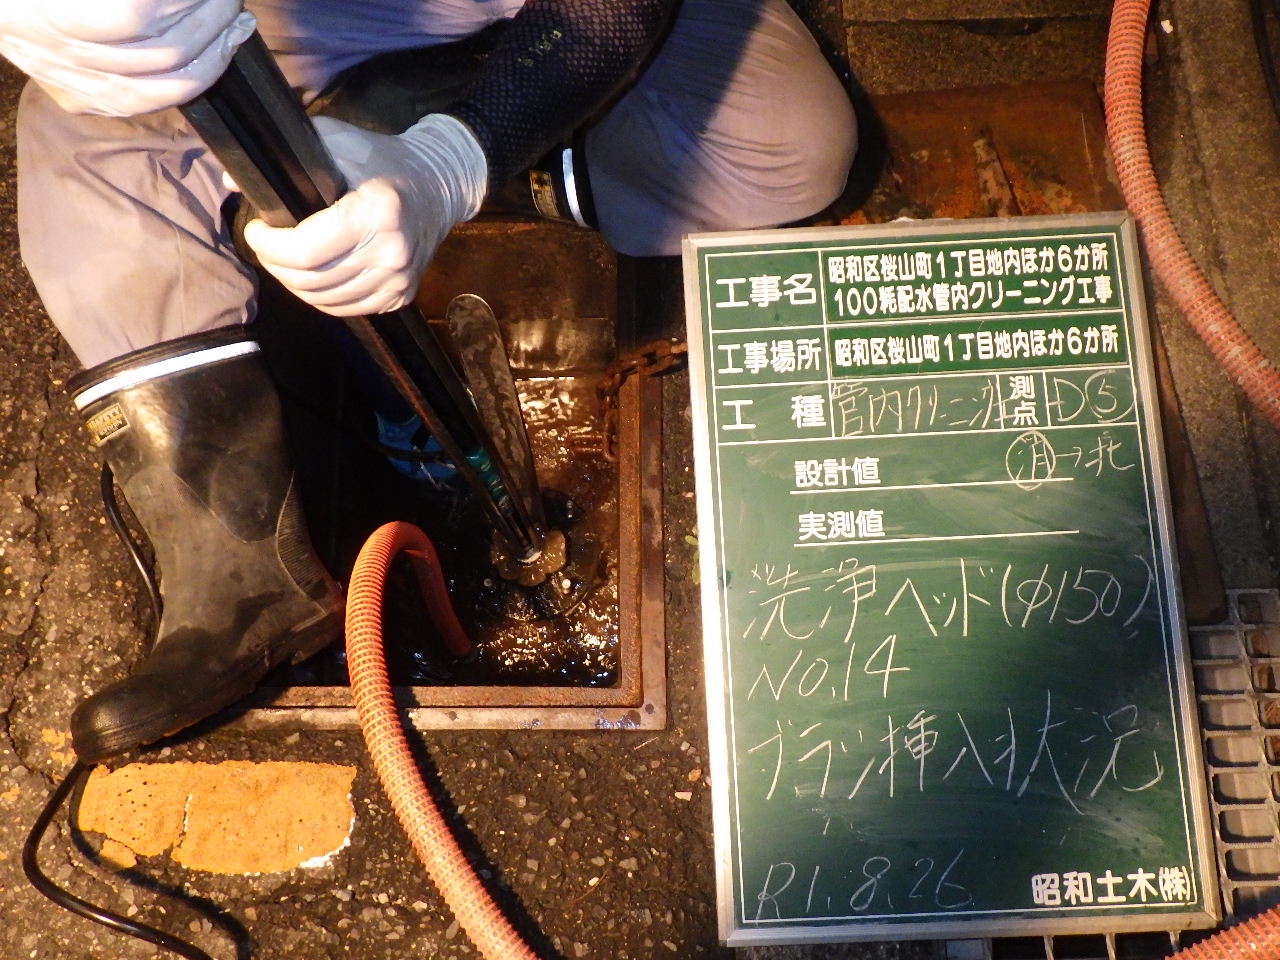 昭和区桜山町1丁目地内ほか6か所100粍配水管内クリーニング工事の画像3